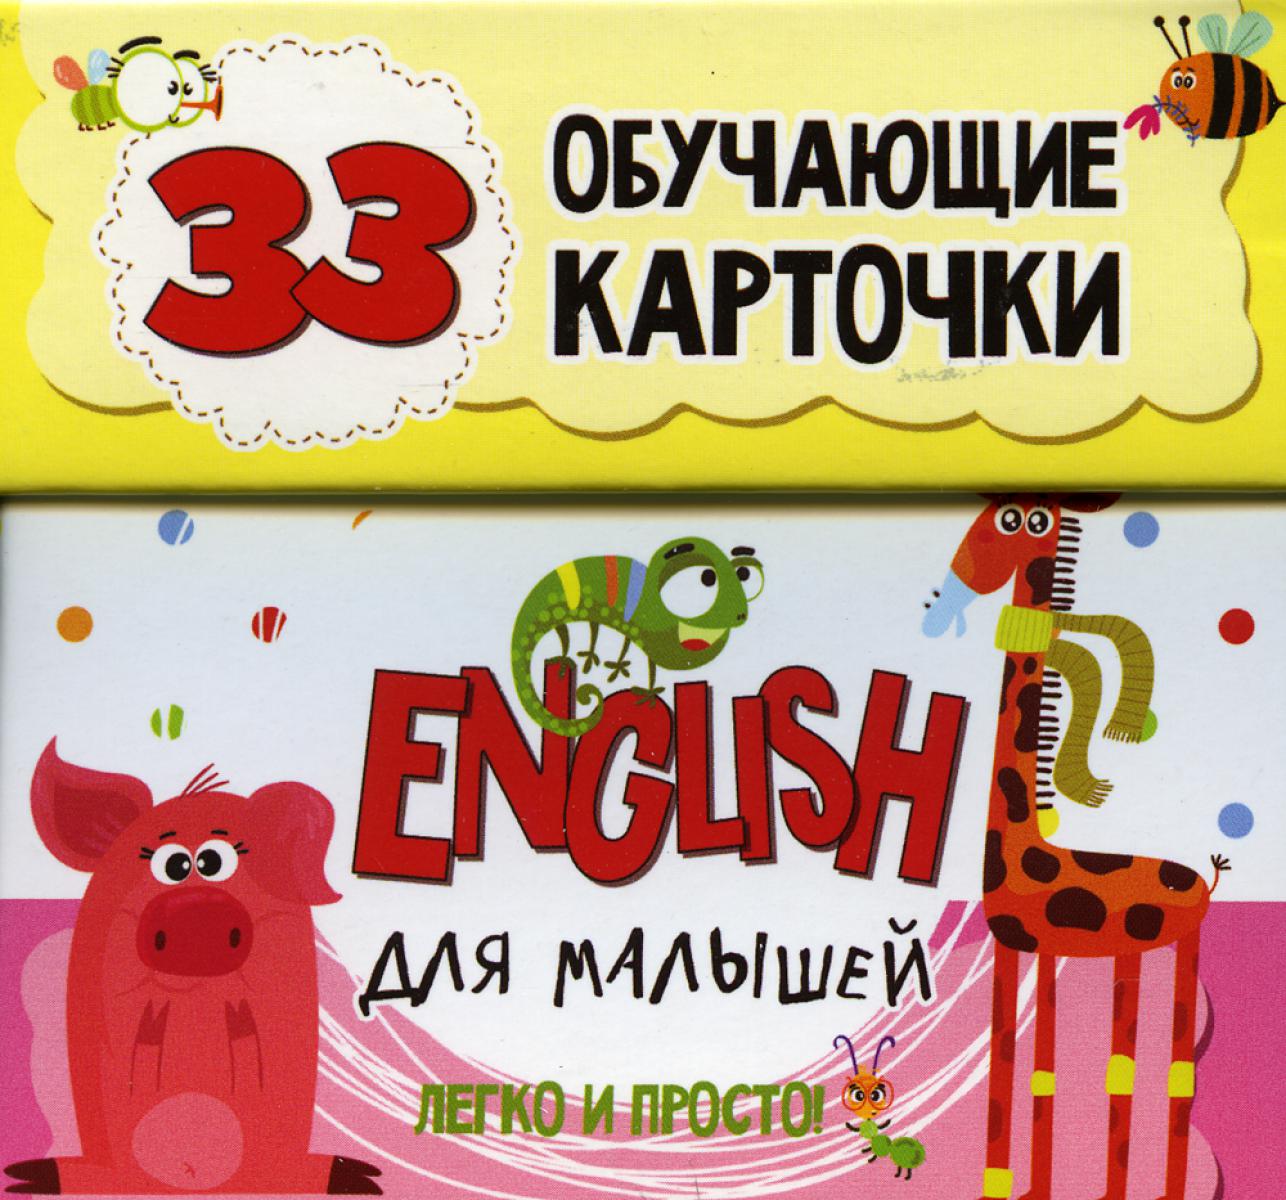 English для малышей в карточках (33 обучающие карточки).